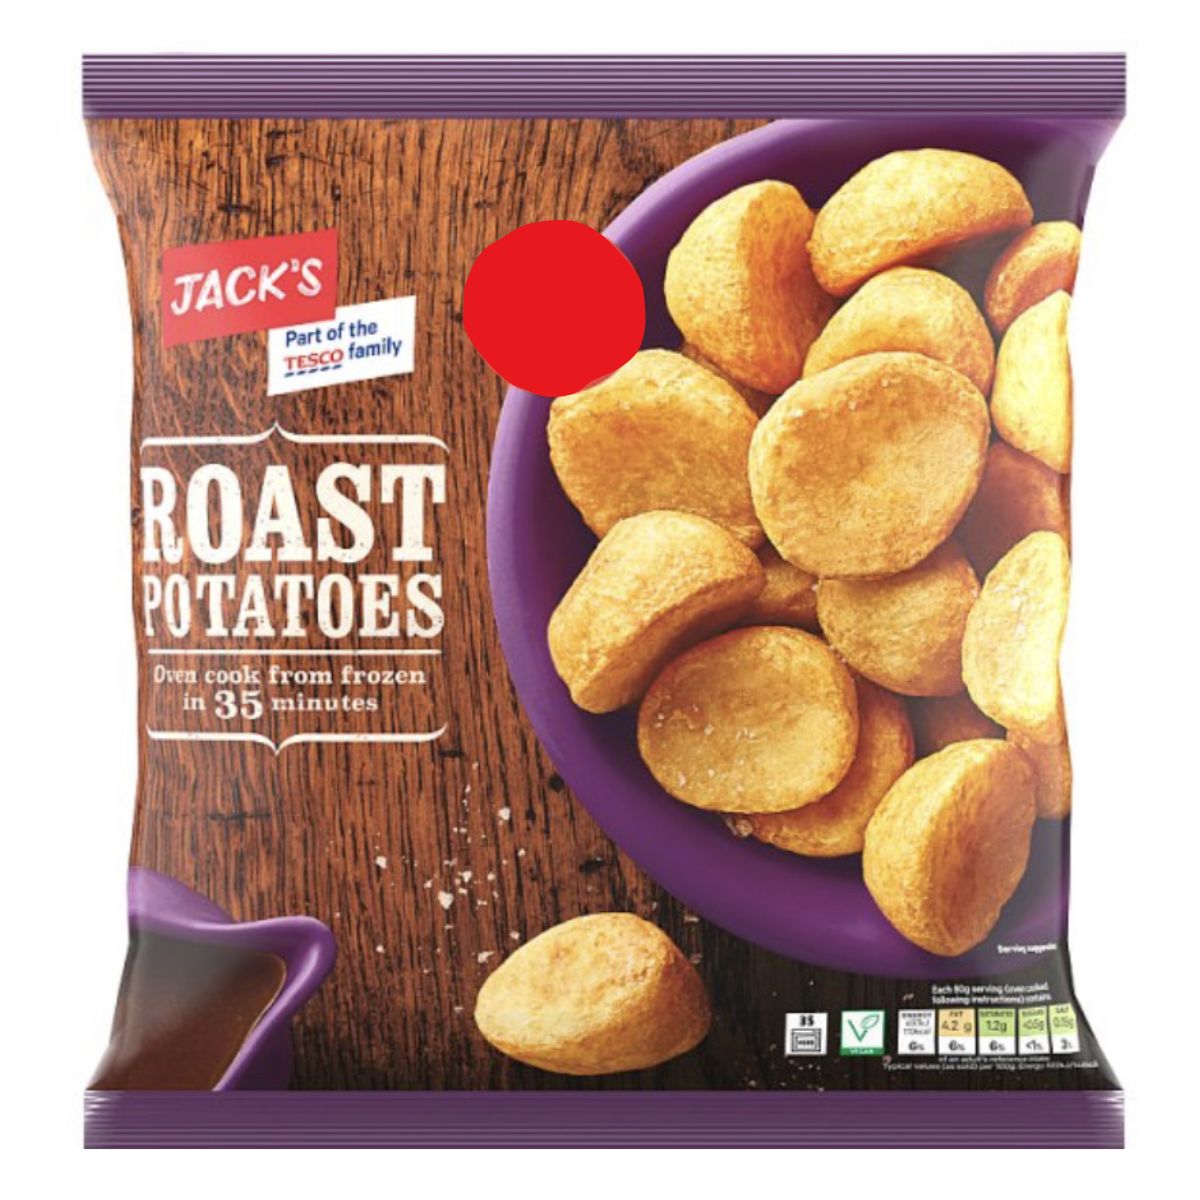 A bag of Jacks - Roast Potatoes - 750g.